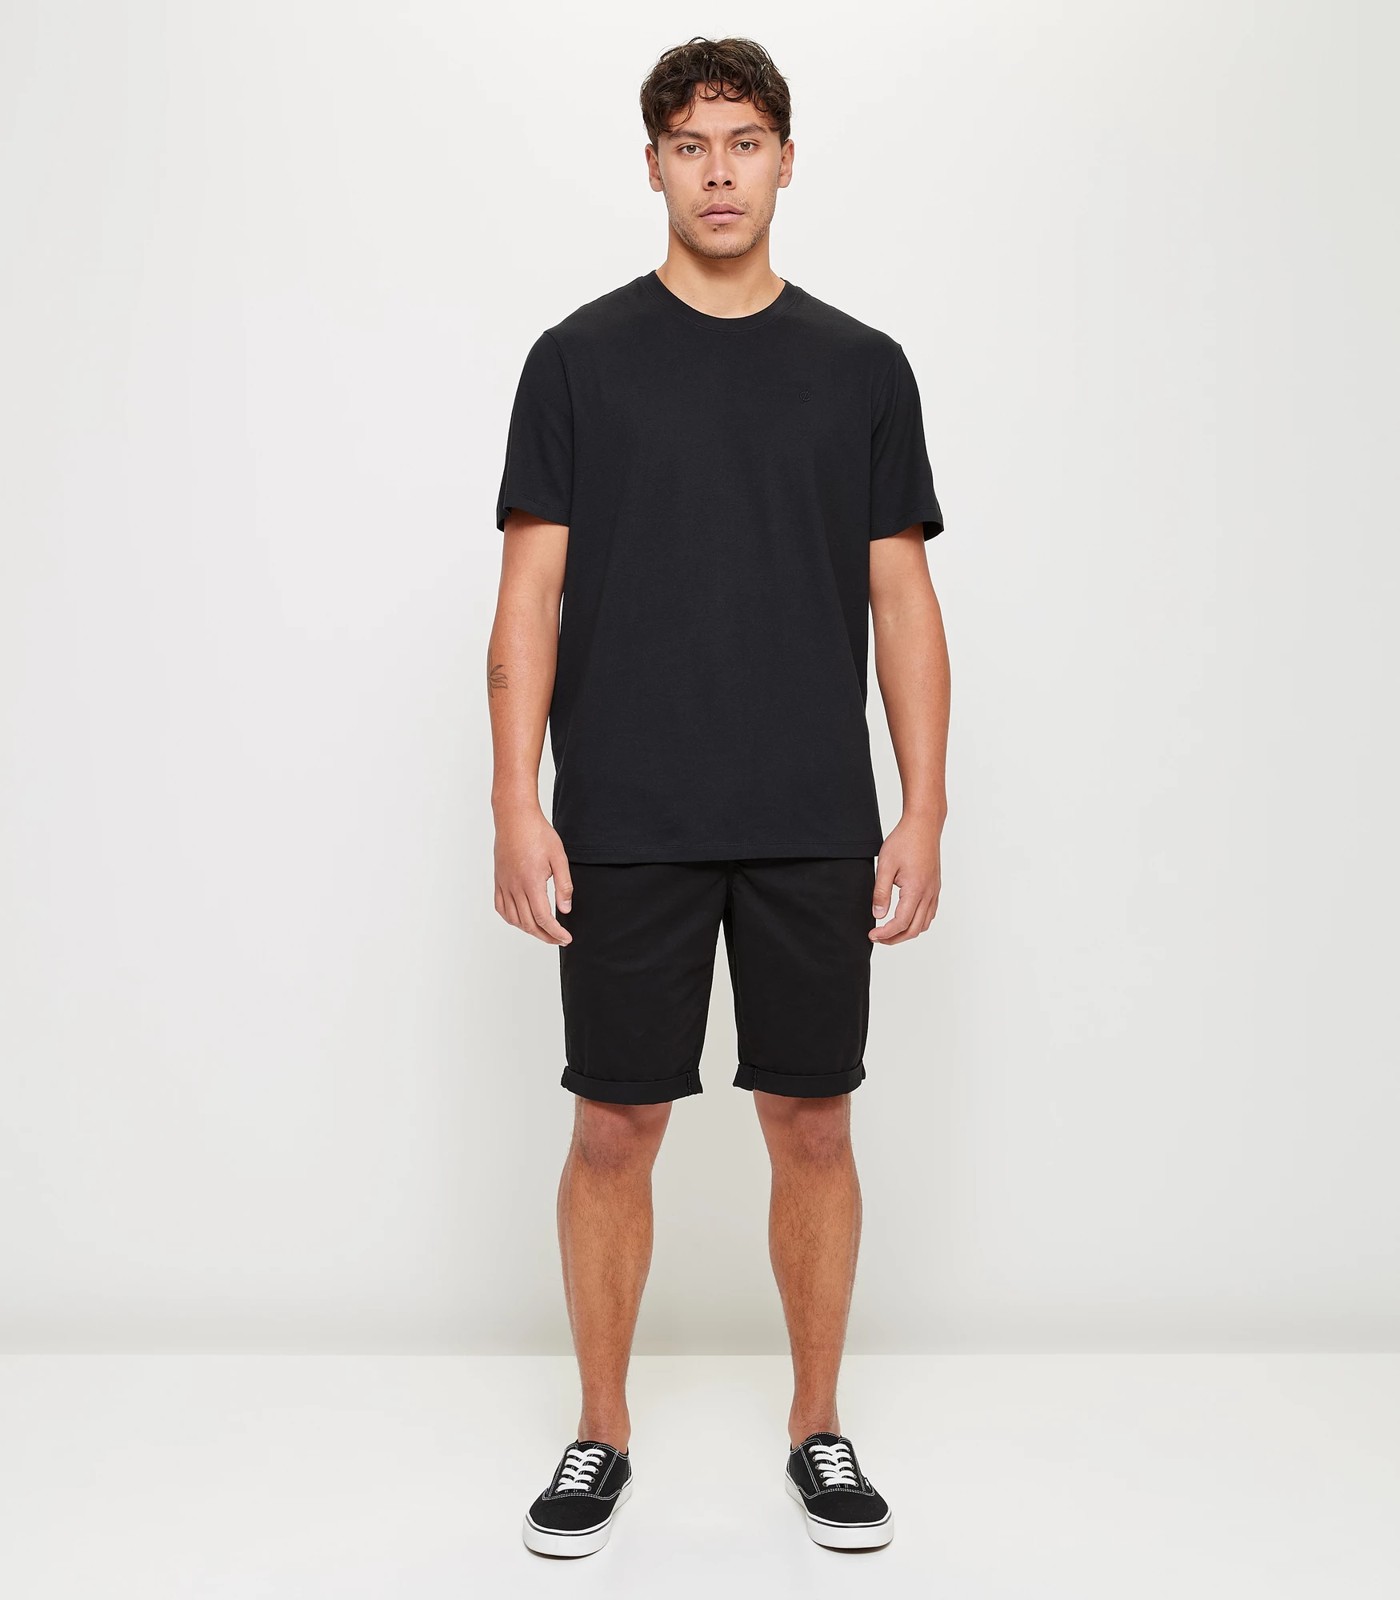 Commons Core T-Shirt - Black | Target Australia